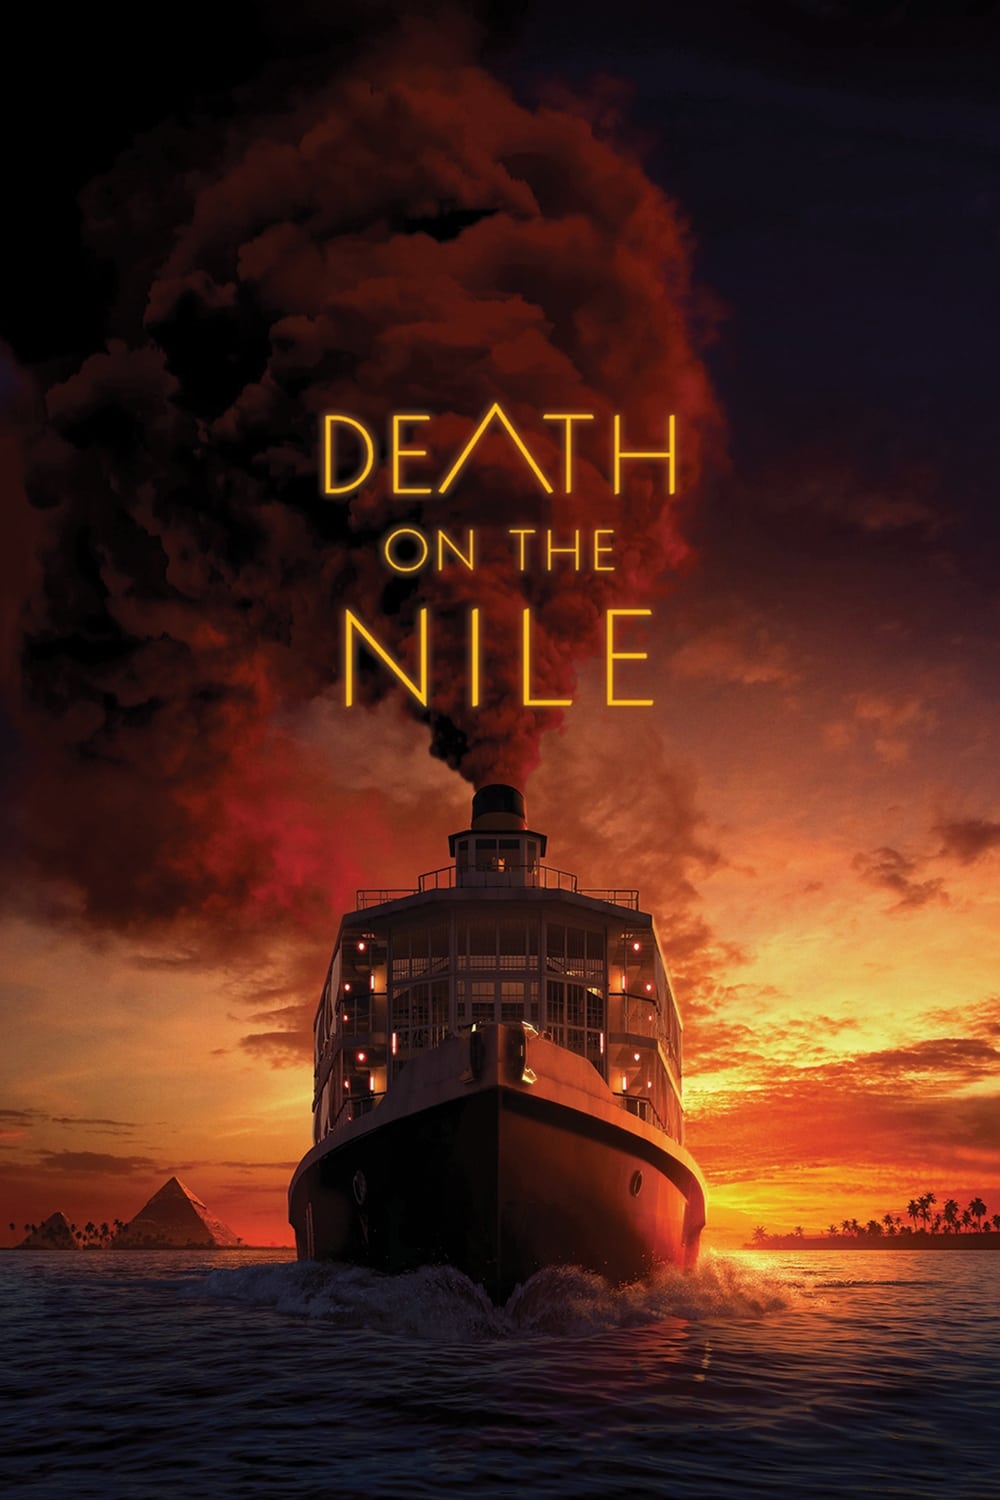 Caratula de Death on the Nile (Muerte en el Nilo) 